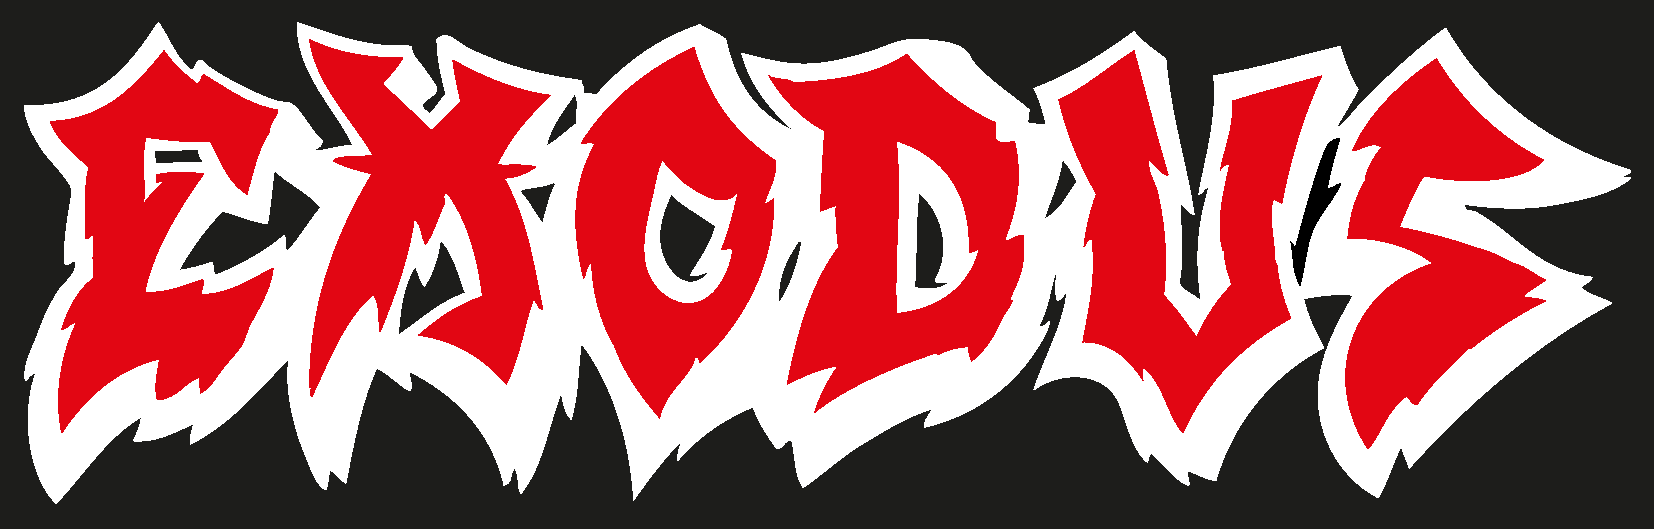 Exodus Logo png